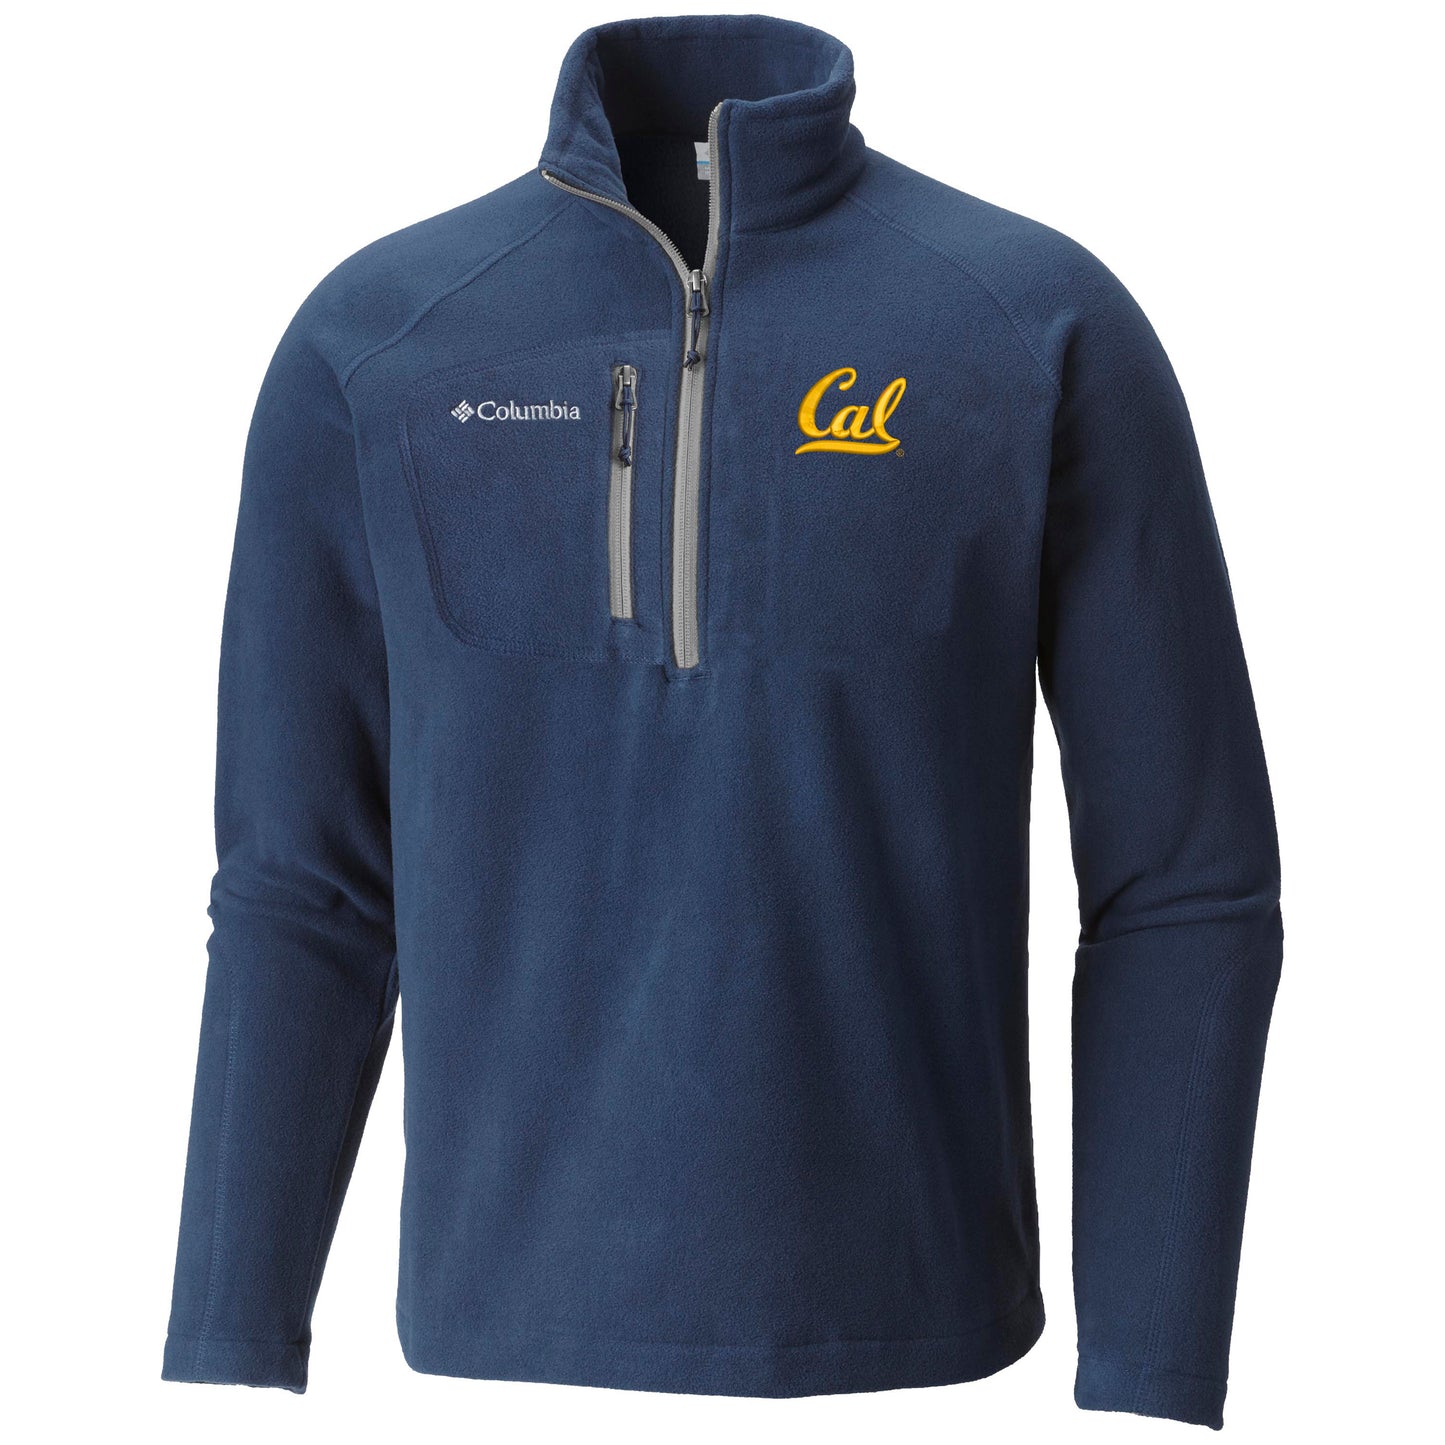 U.C. Berkeley Cal embroidered Columbia half zip men's fleece jacket-Navy-Shop College Wear